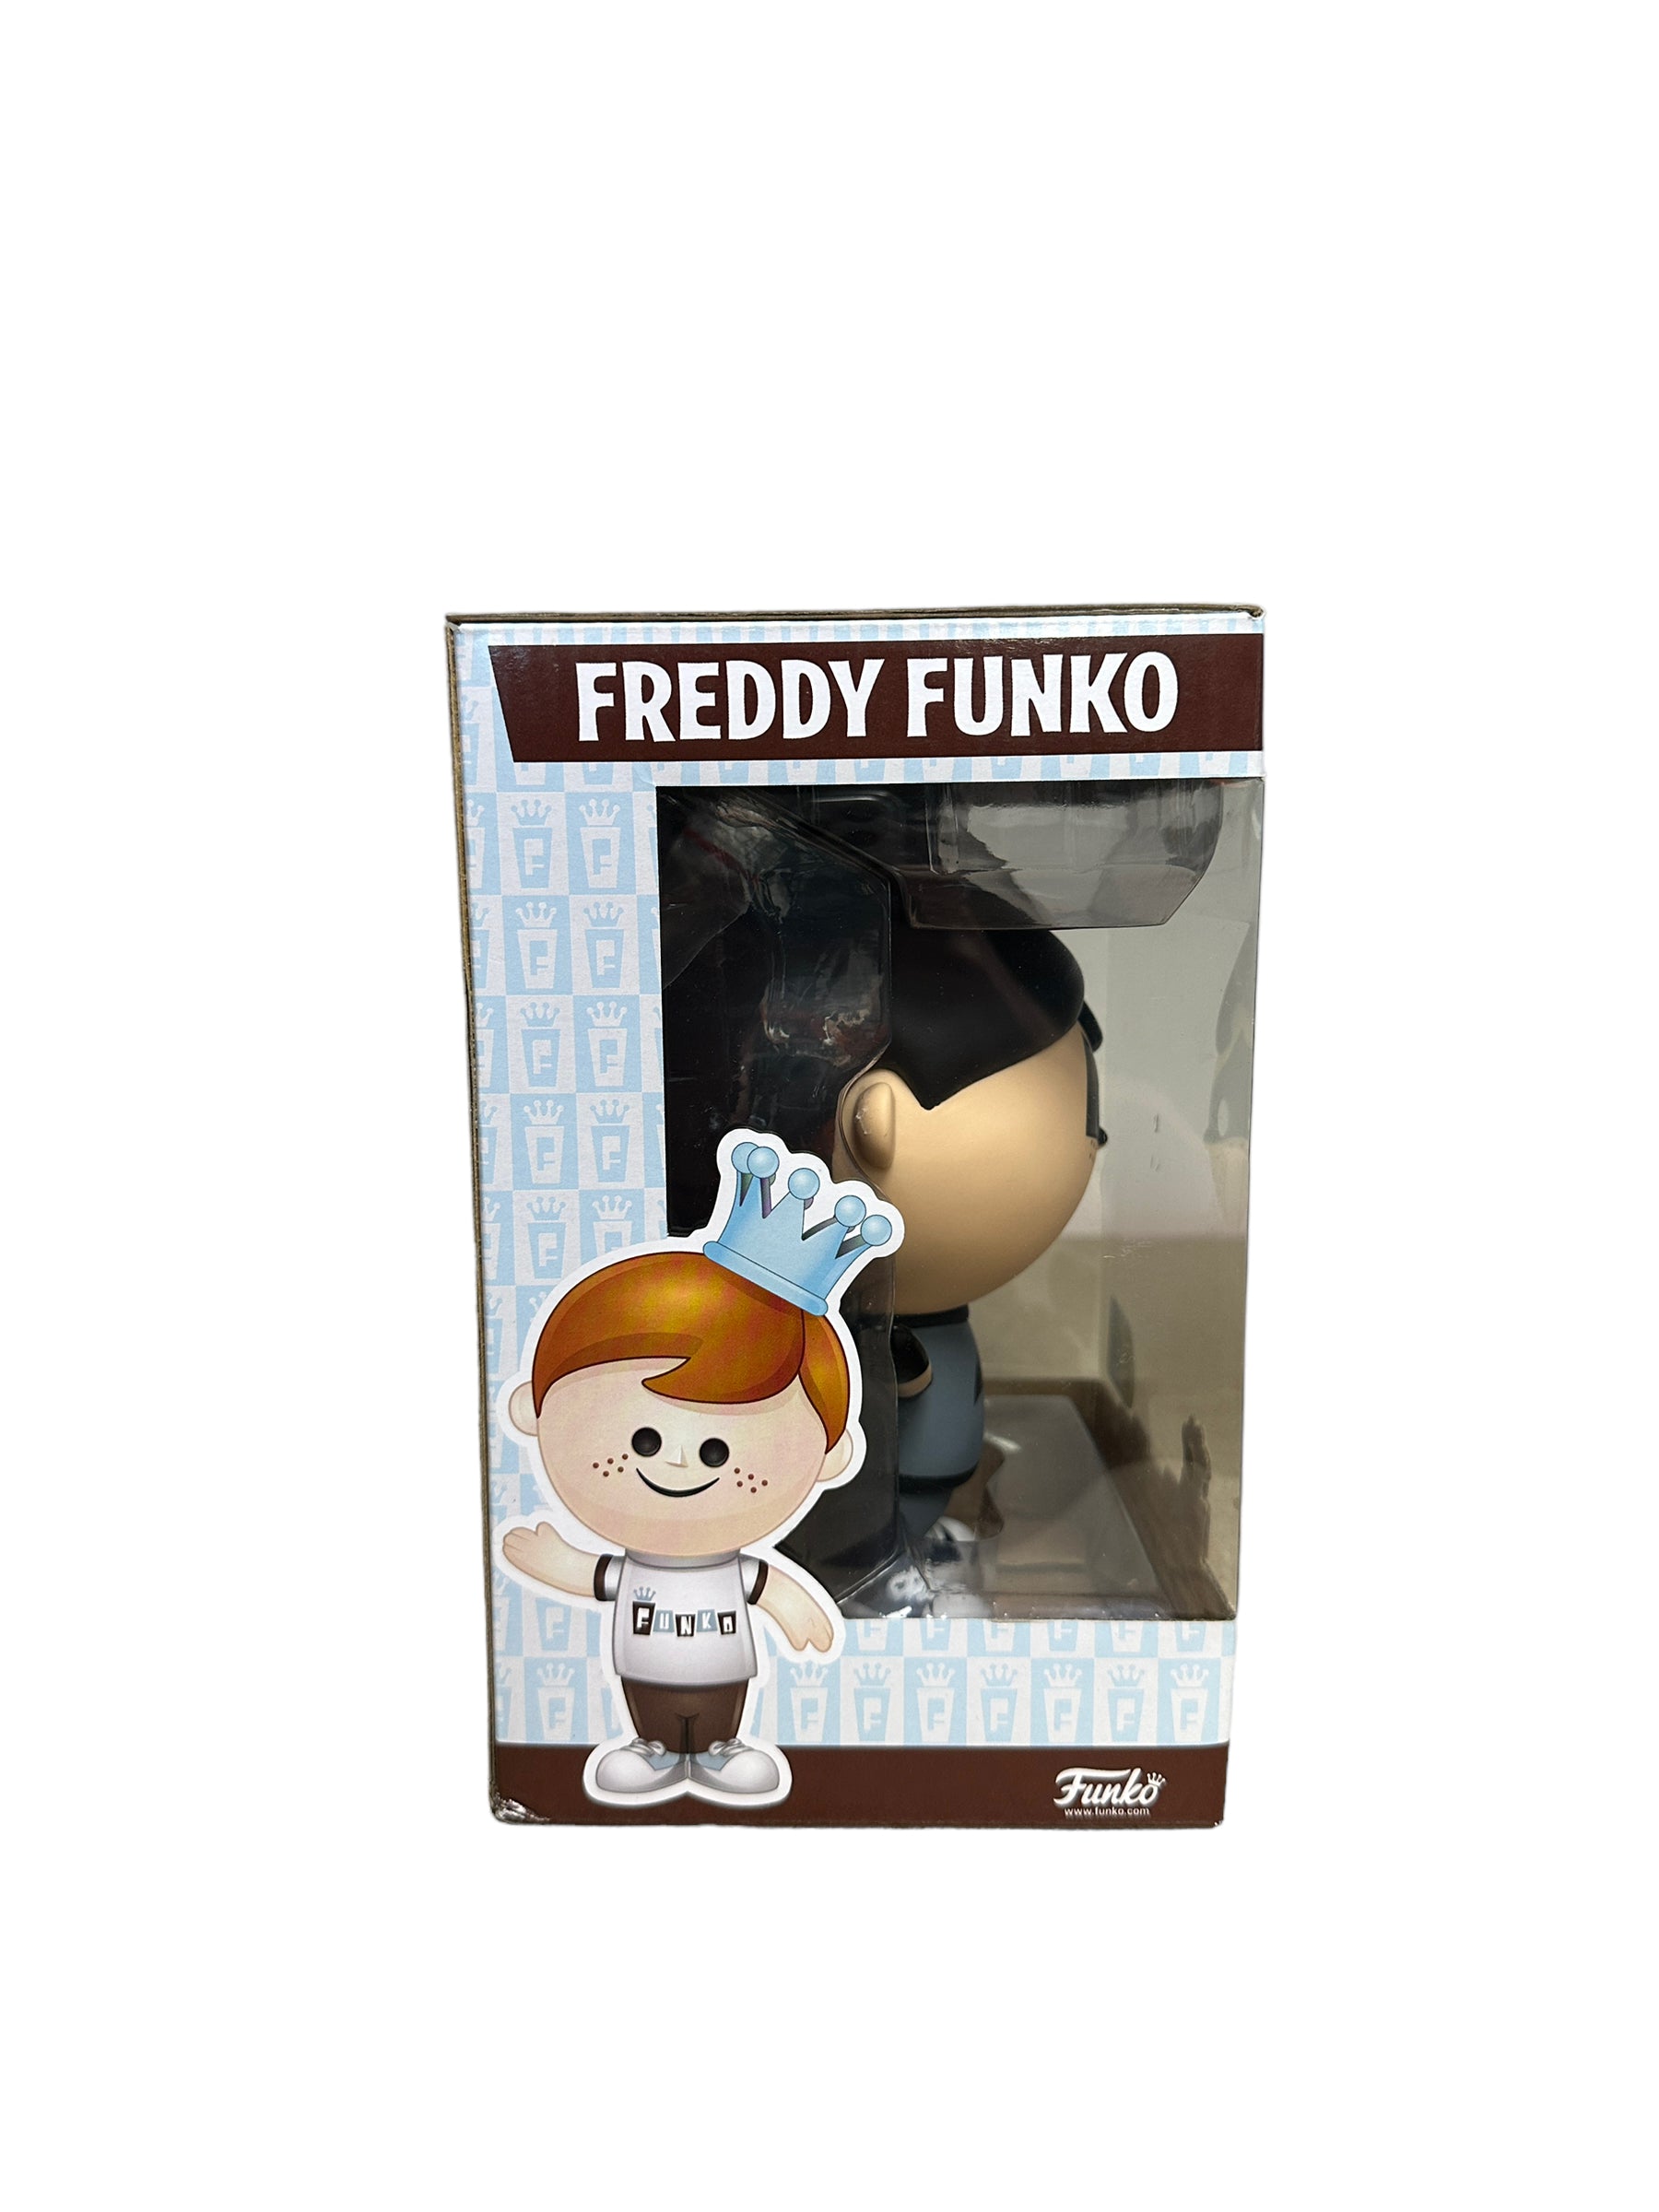 Freddy Funko as Batman Retro Vinyl Figure! - DC - SDCC 2016 Exclusive LE100 Pcs - Condition 7.5/10